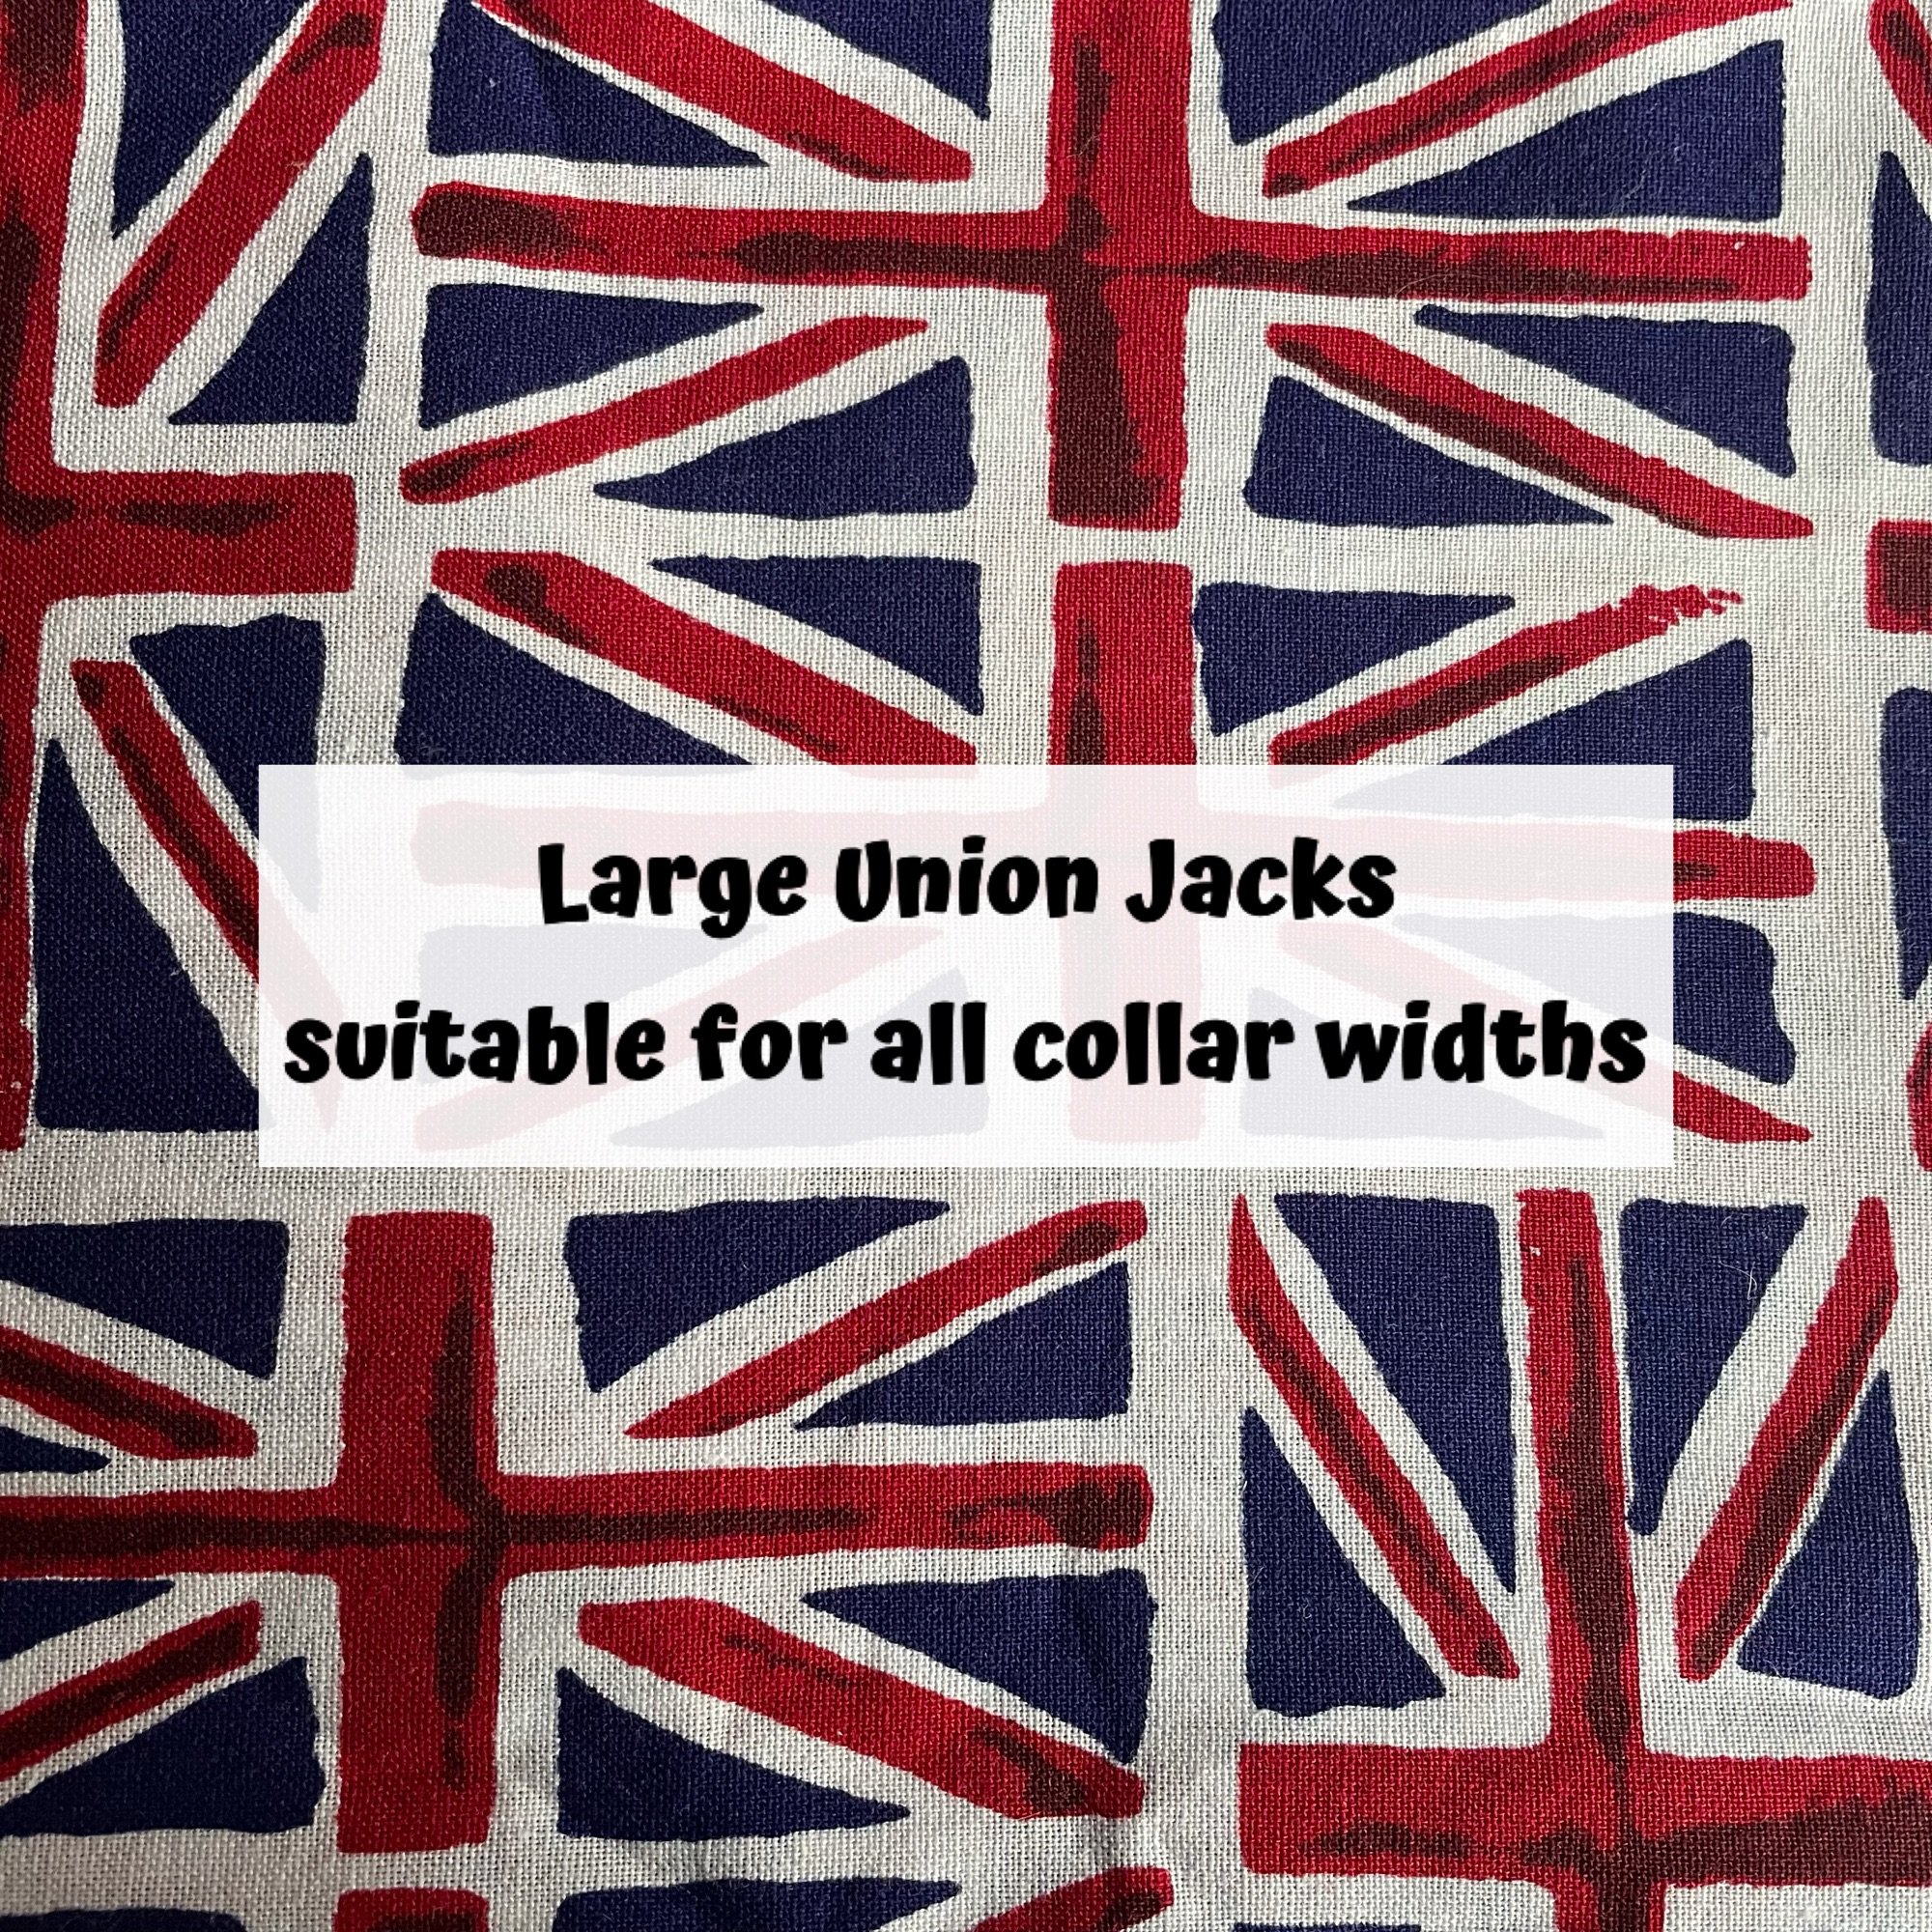 Large Union Jacks